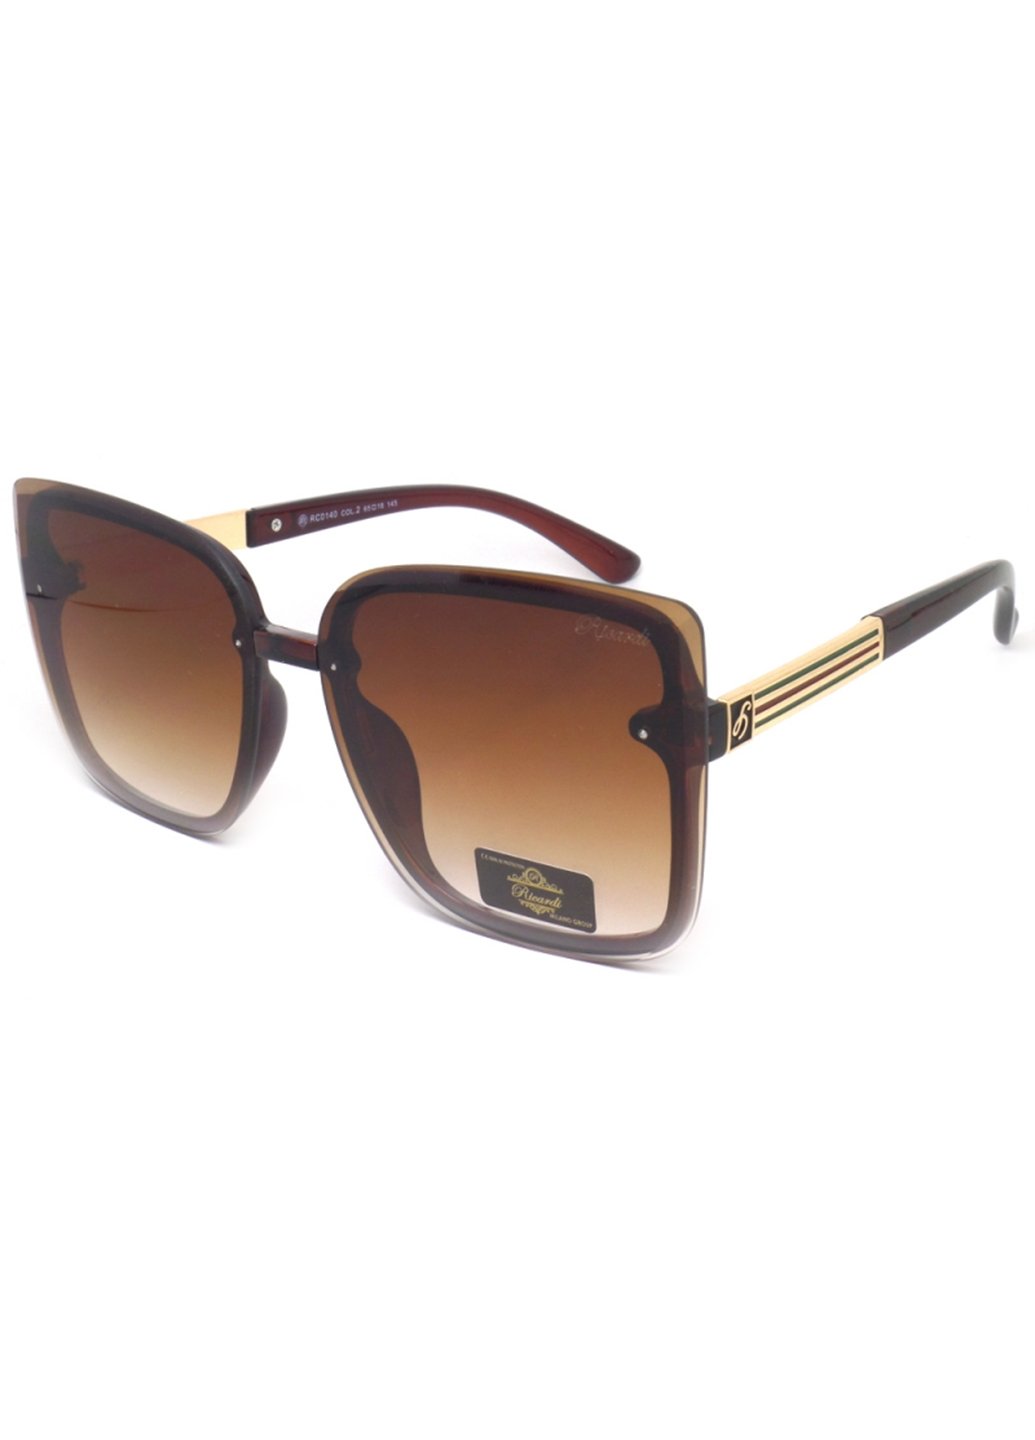 Купить Женские солнцезащитные очки Ricardi RC0140 110012 - Коричневый в интернет-магазине